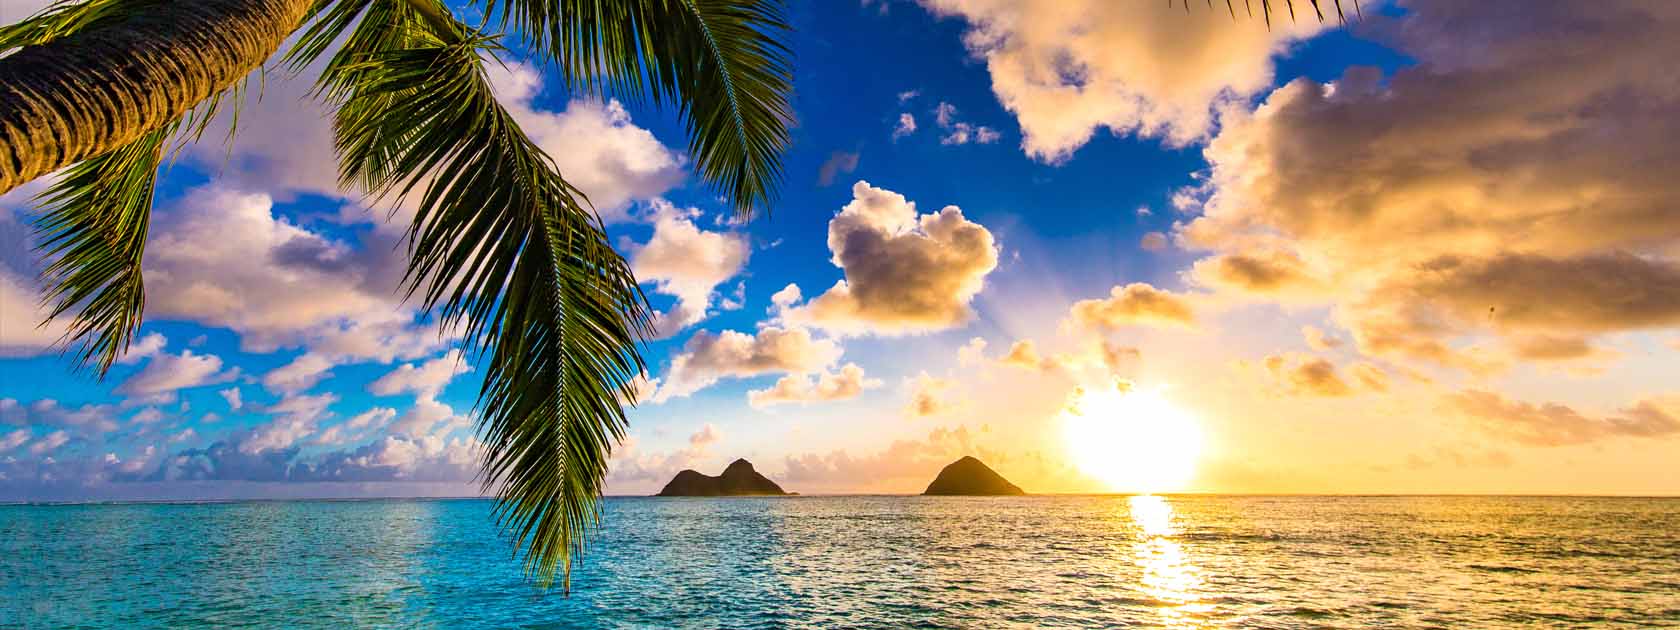 coucher de soleil au bord de l'océan avec palmiers et 2 petits îles au loin